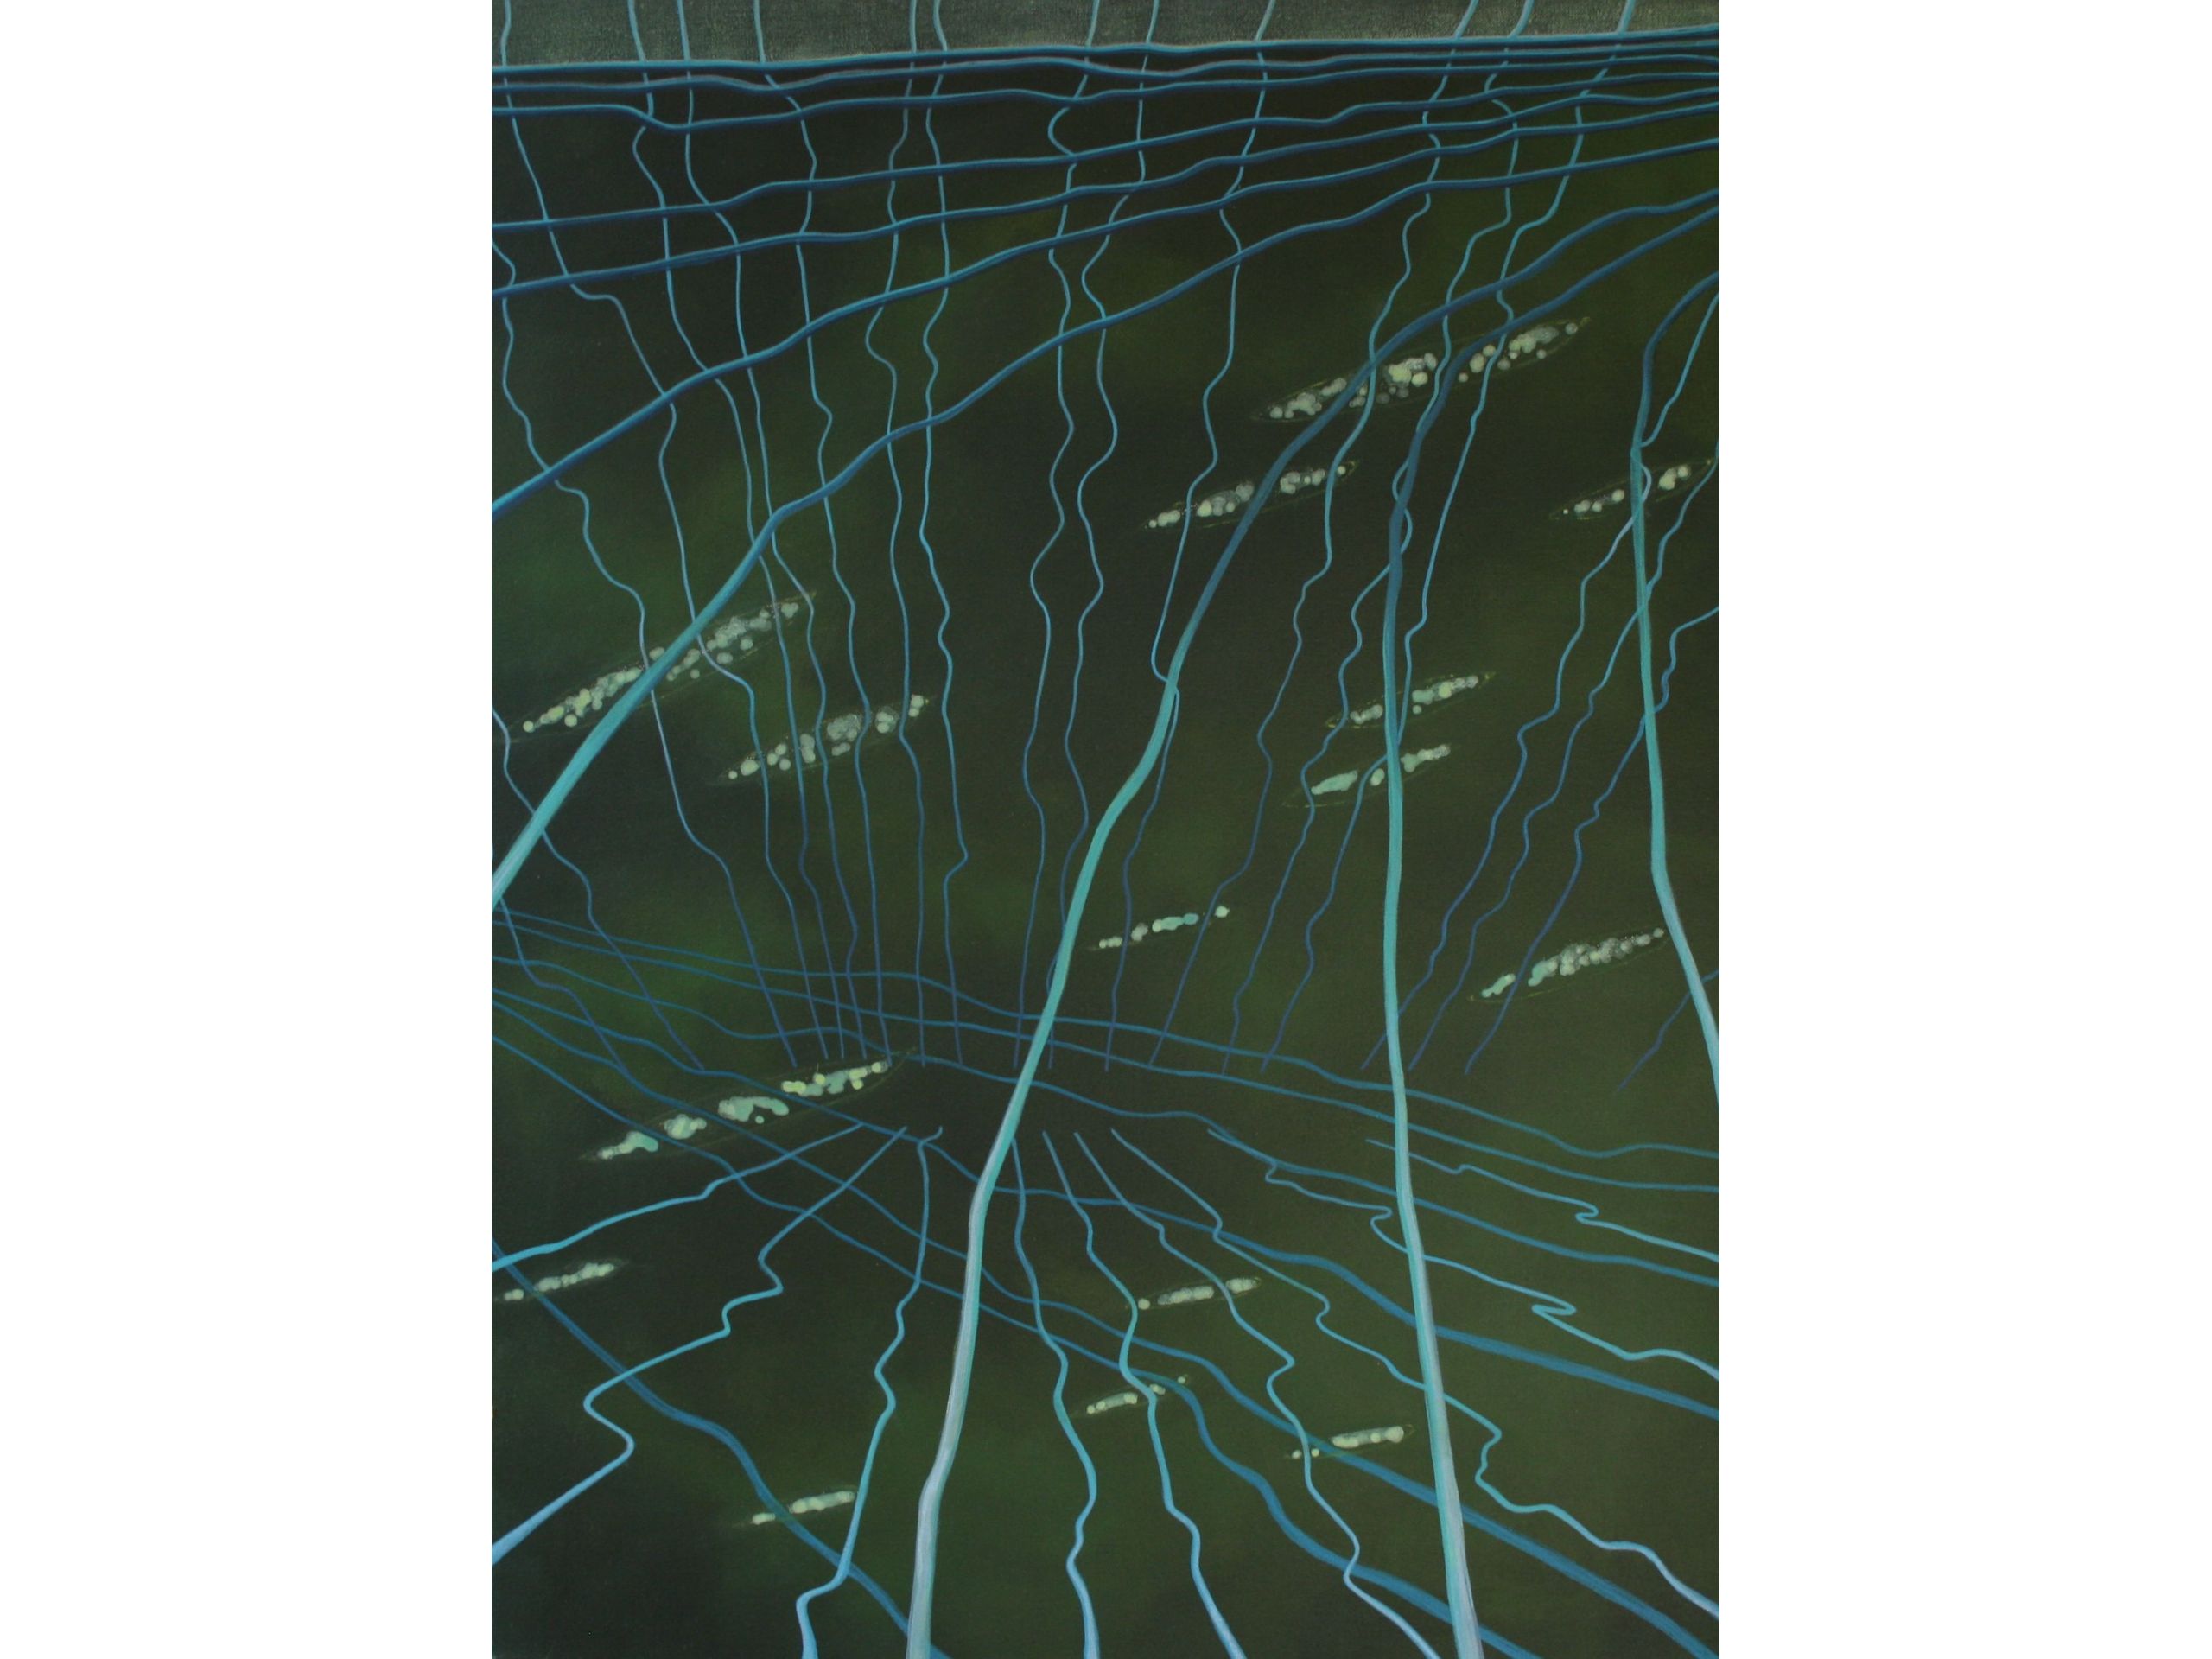 Daniel Wollman, 'Zwischenwelt III', 2020, Acryl auf Leinwand, 80 x 60 cm, 350 € 